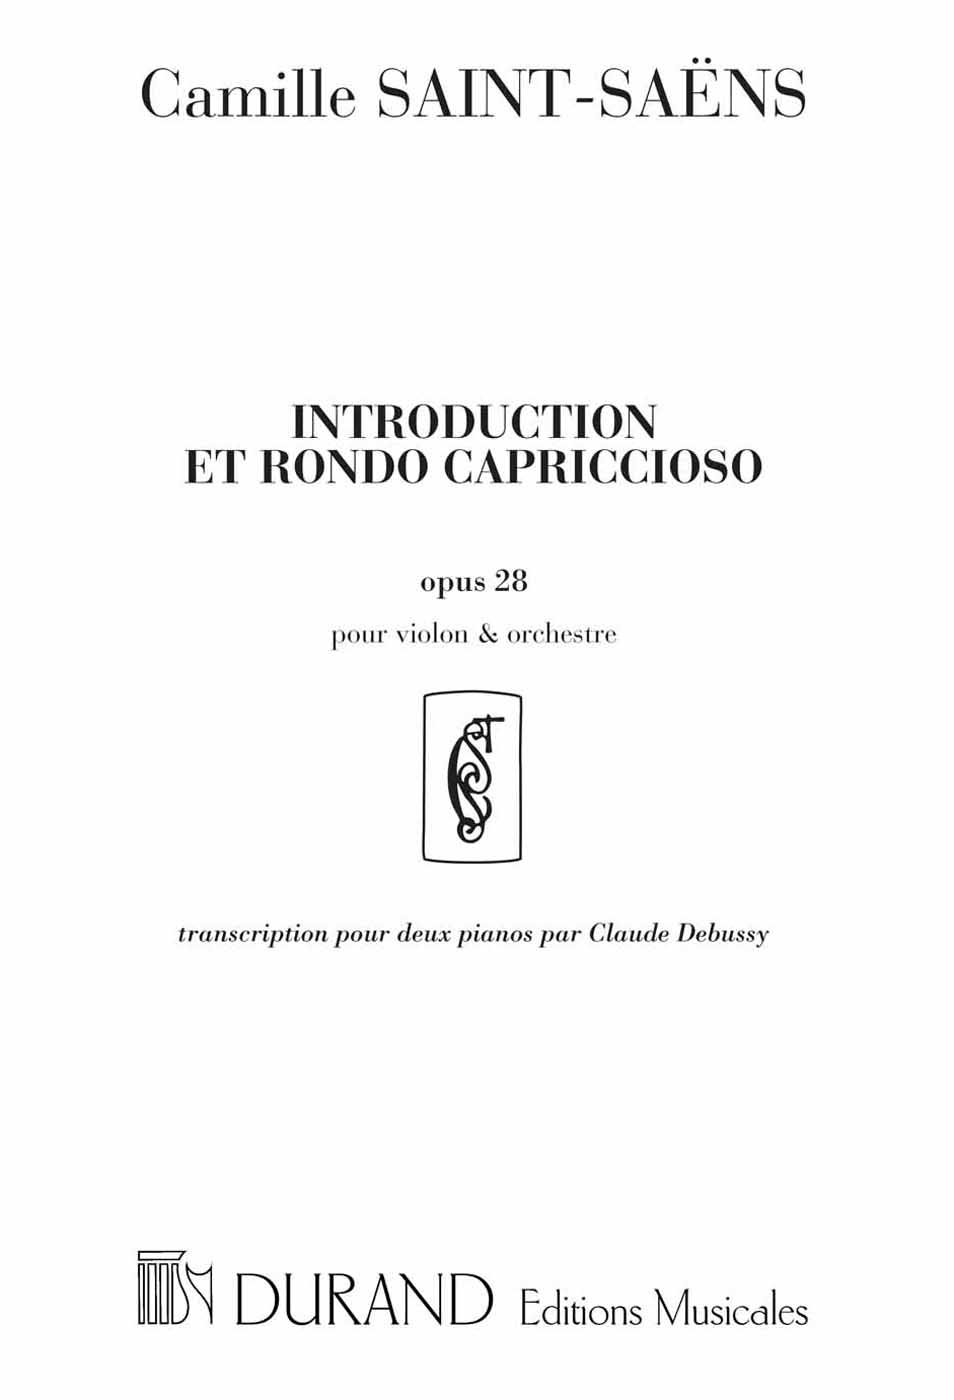 Introduction et rondó capriccioso opus 28: transcription pour deux Pianos par Claude Debussy. 9790044024070